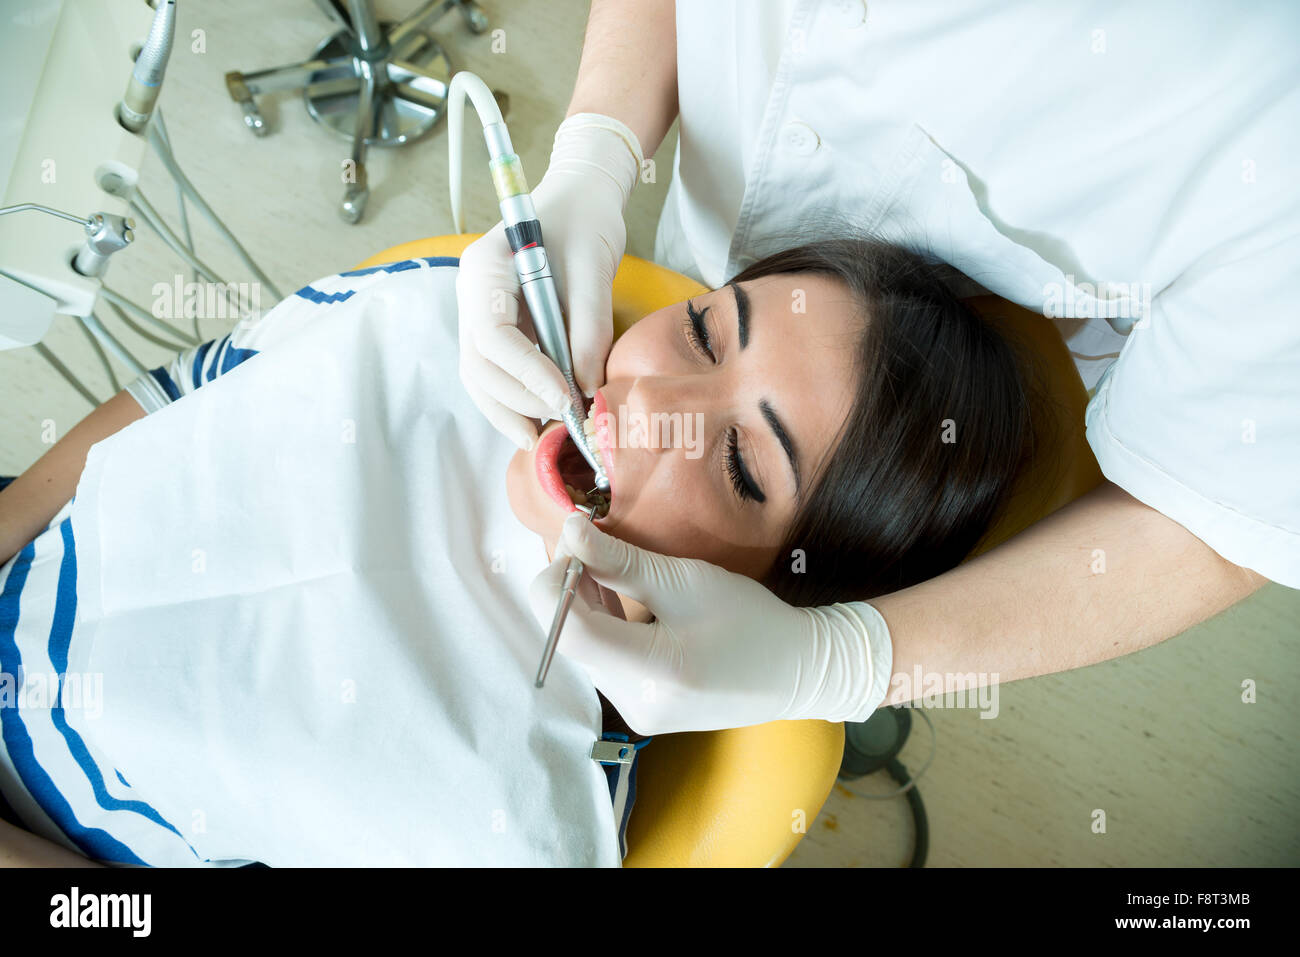 Giovani donne per il dentista nel riunito dentale si siede accanto a un medico per fare il dentista per vedere se i suoi denti erano in buone condizioni Foto Stock